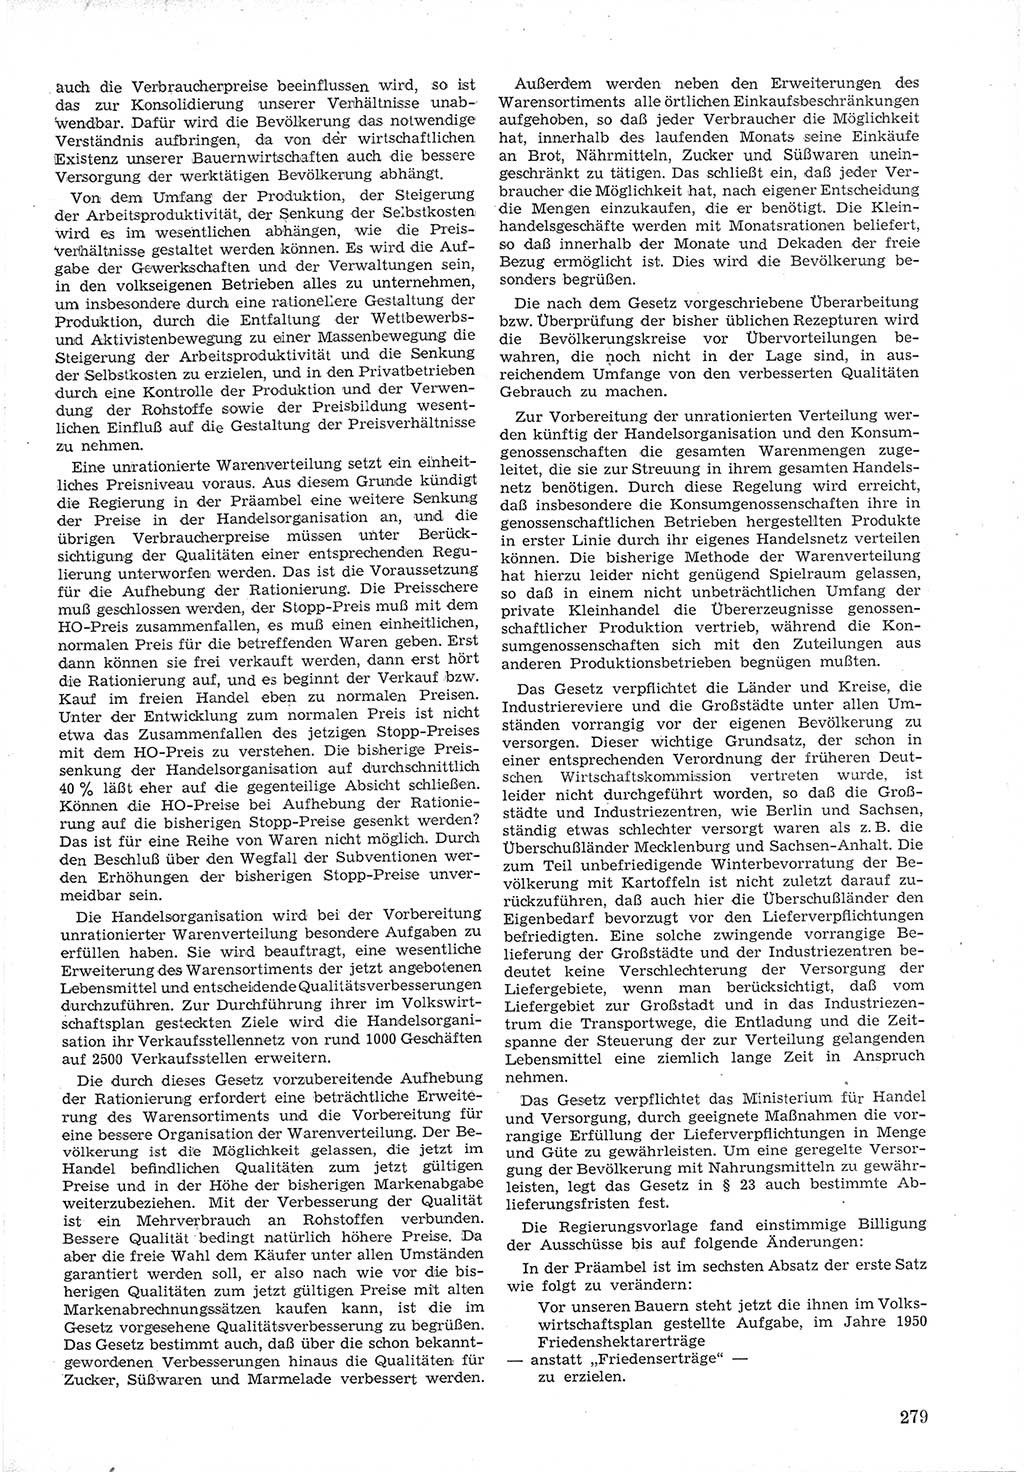 Provisorische Volkskammer (VK) der Deutschen Demokratischen Republik (DDR) 1949-1950, Dokument 293 (Prov. VK DDR 1949-1950, Dok. 293)